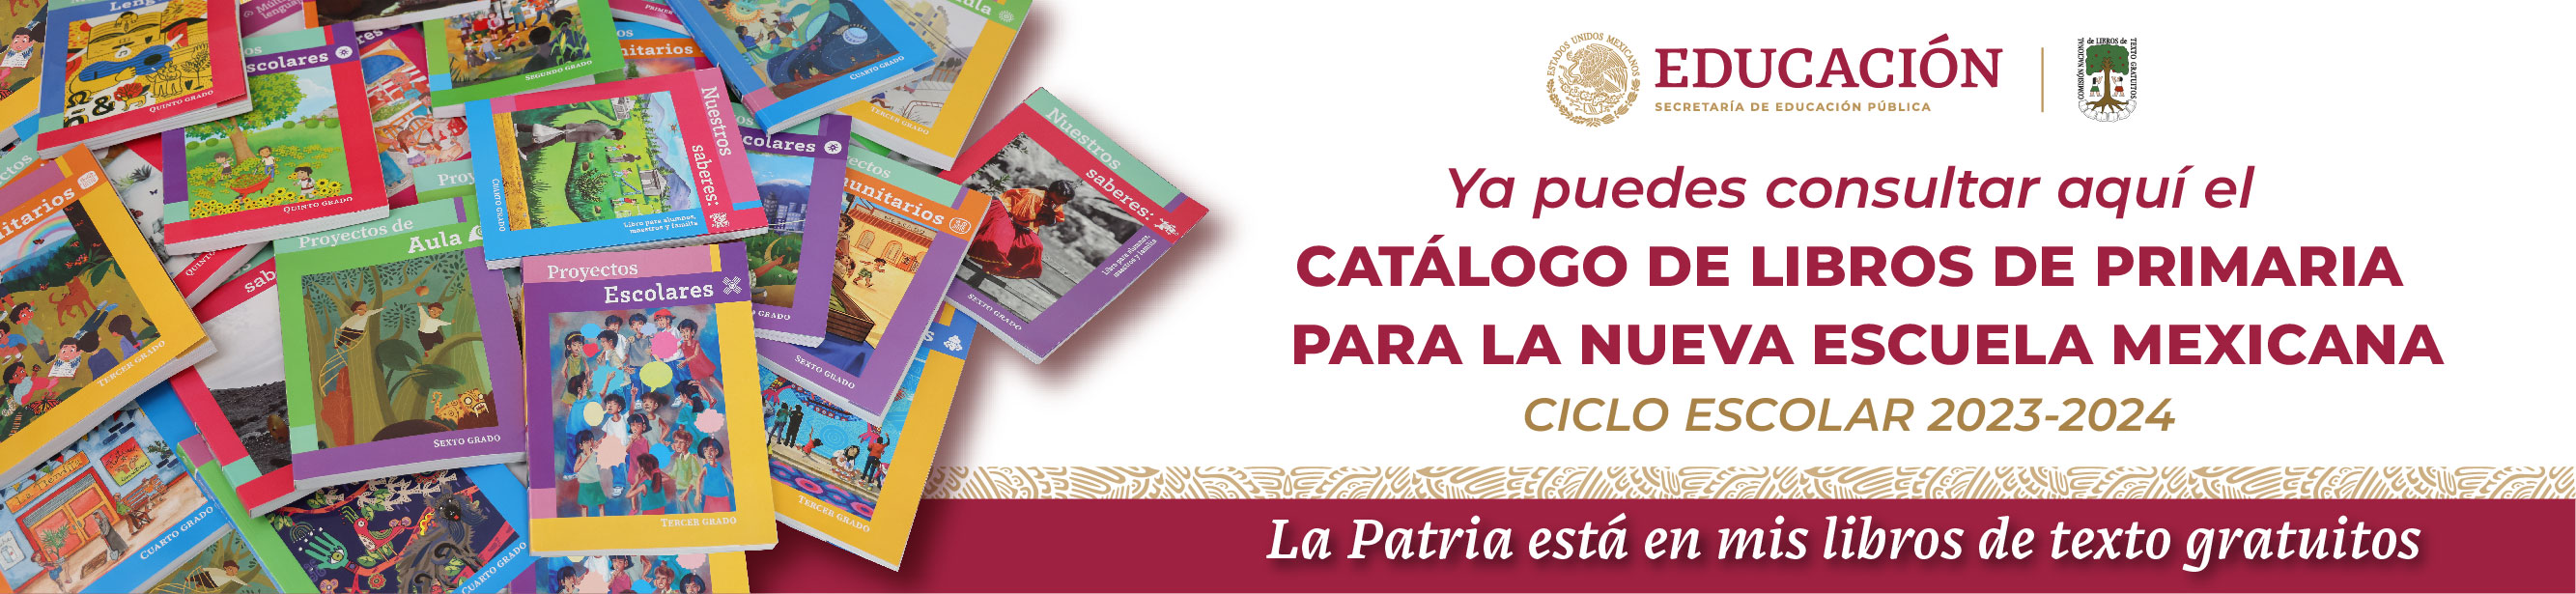 Catálogo de libros de primaria para la Nueva Escuela Mexicana